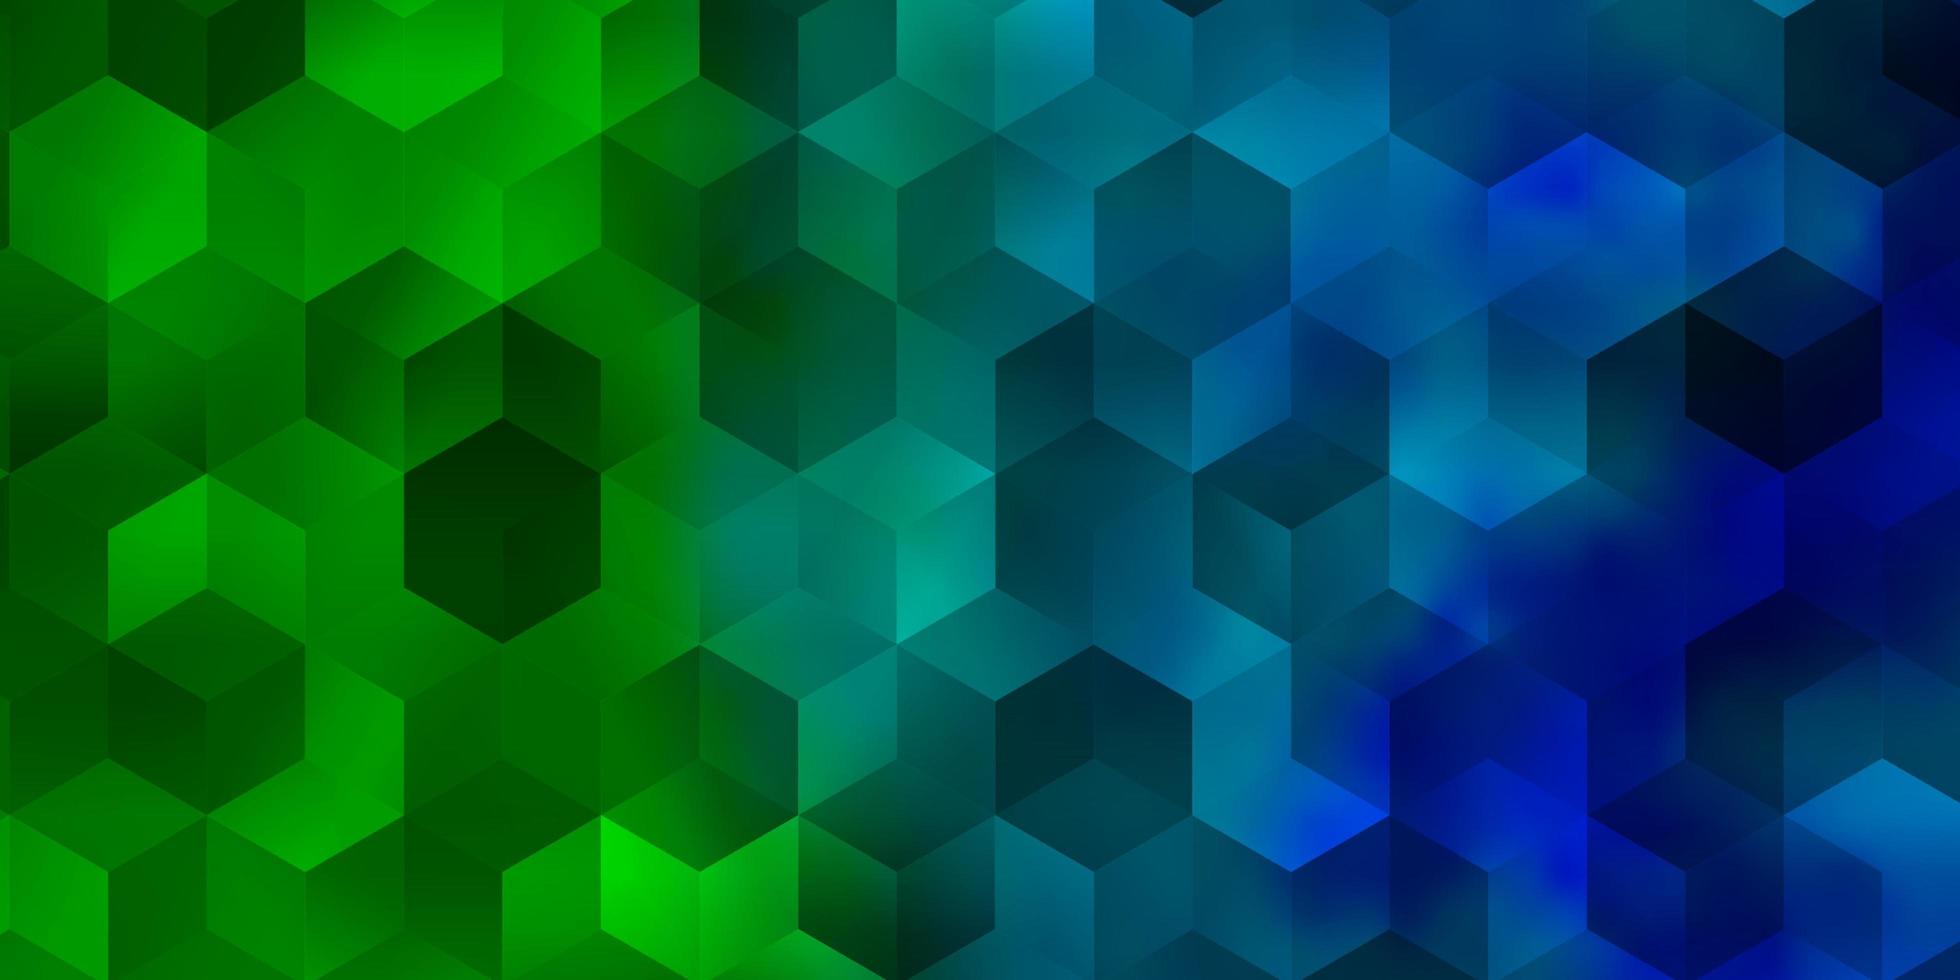 fond de vecteur bleu clair, vert avec ensemble d'hexagones.